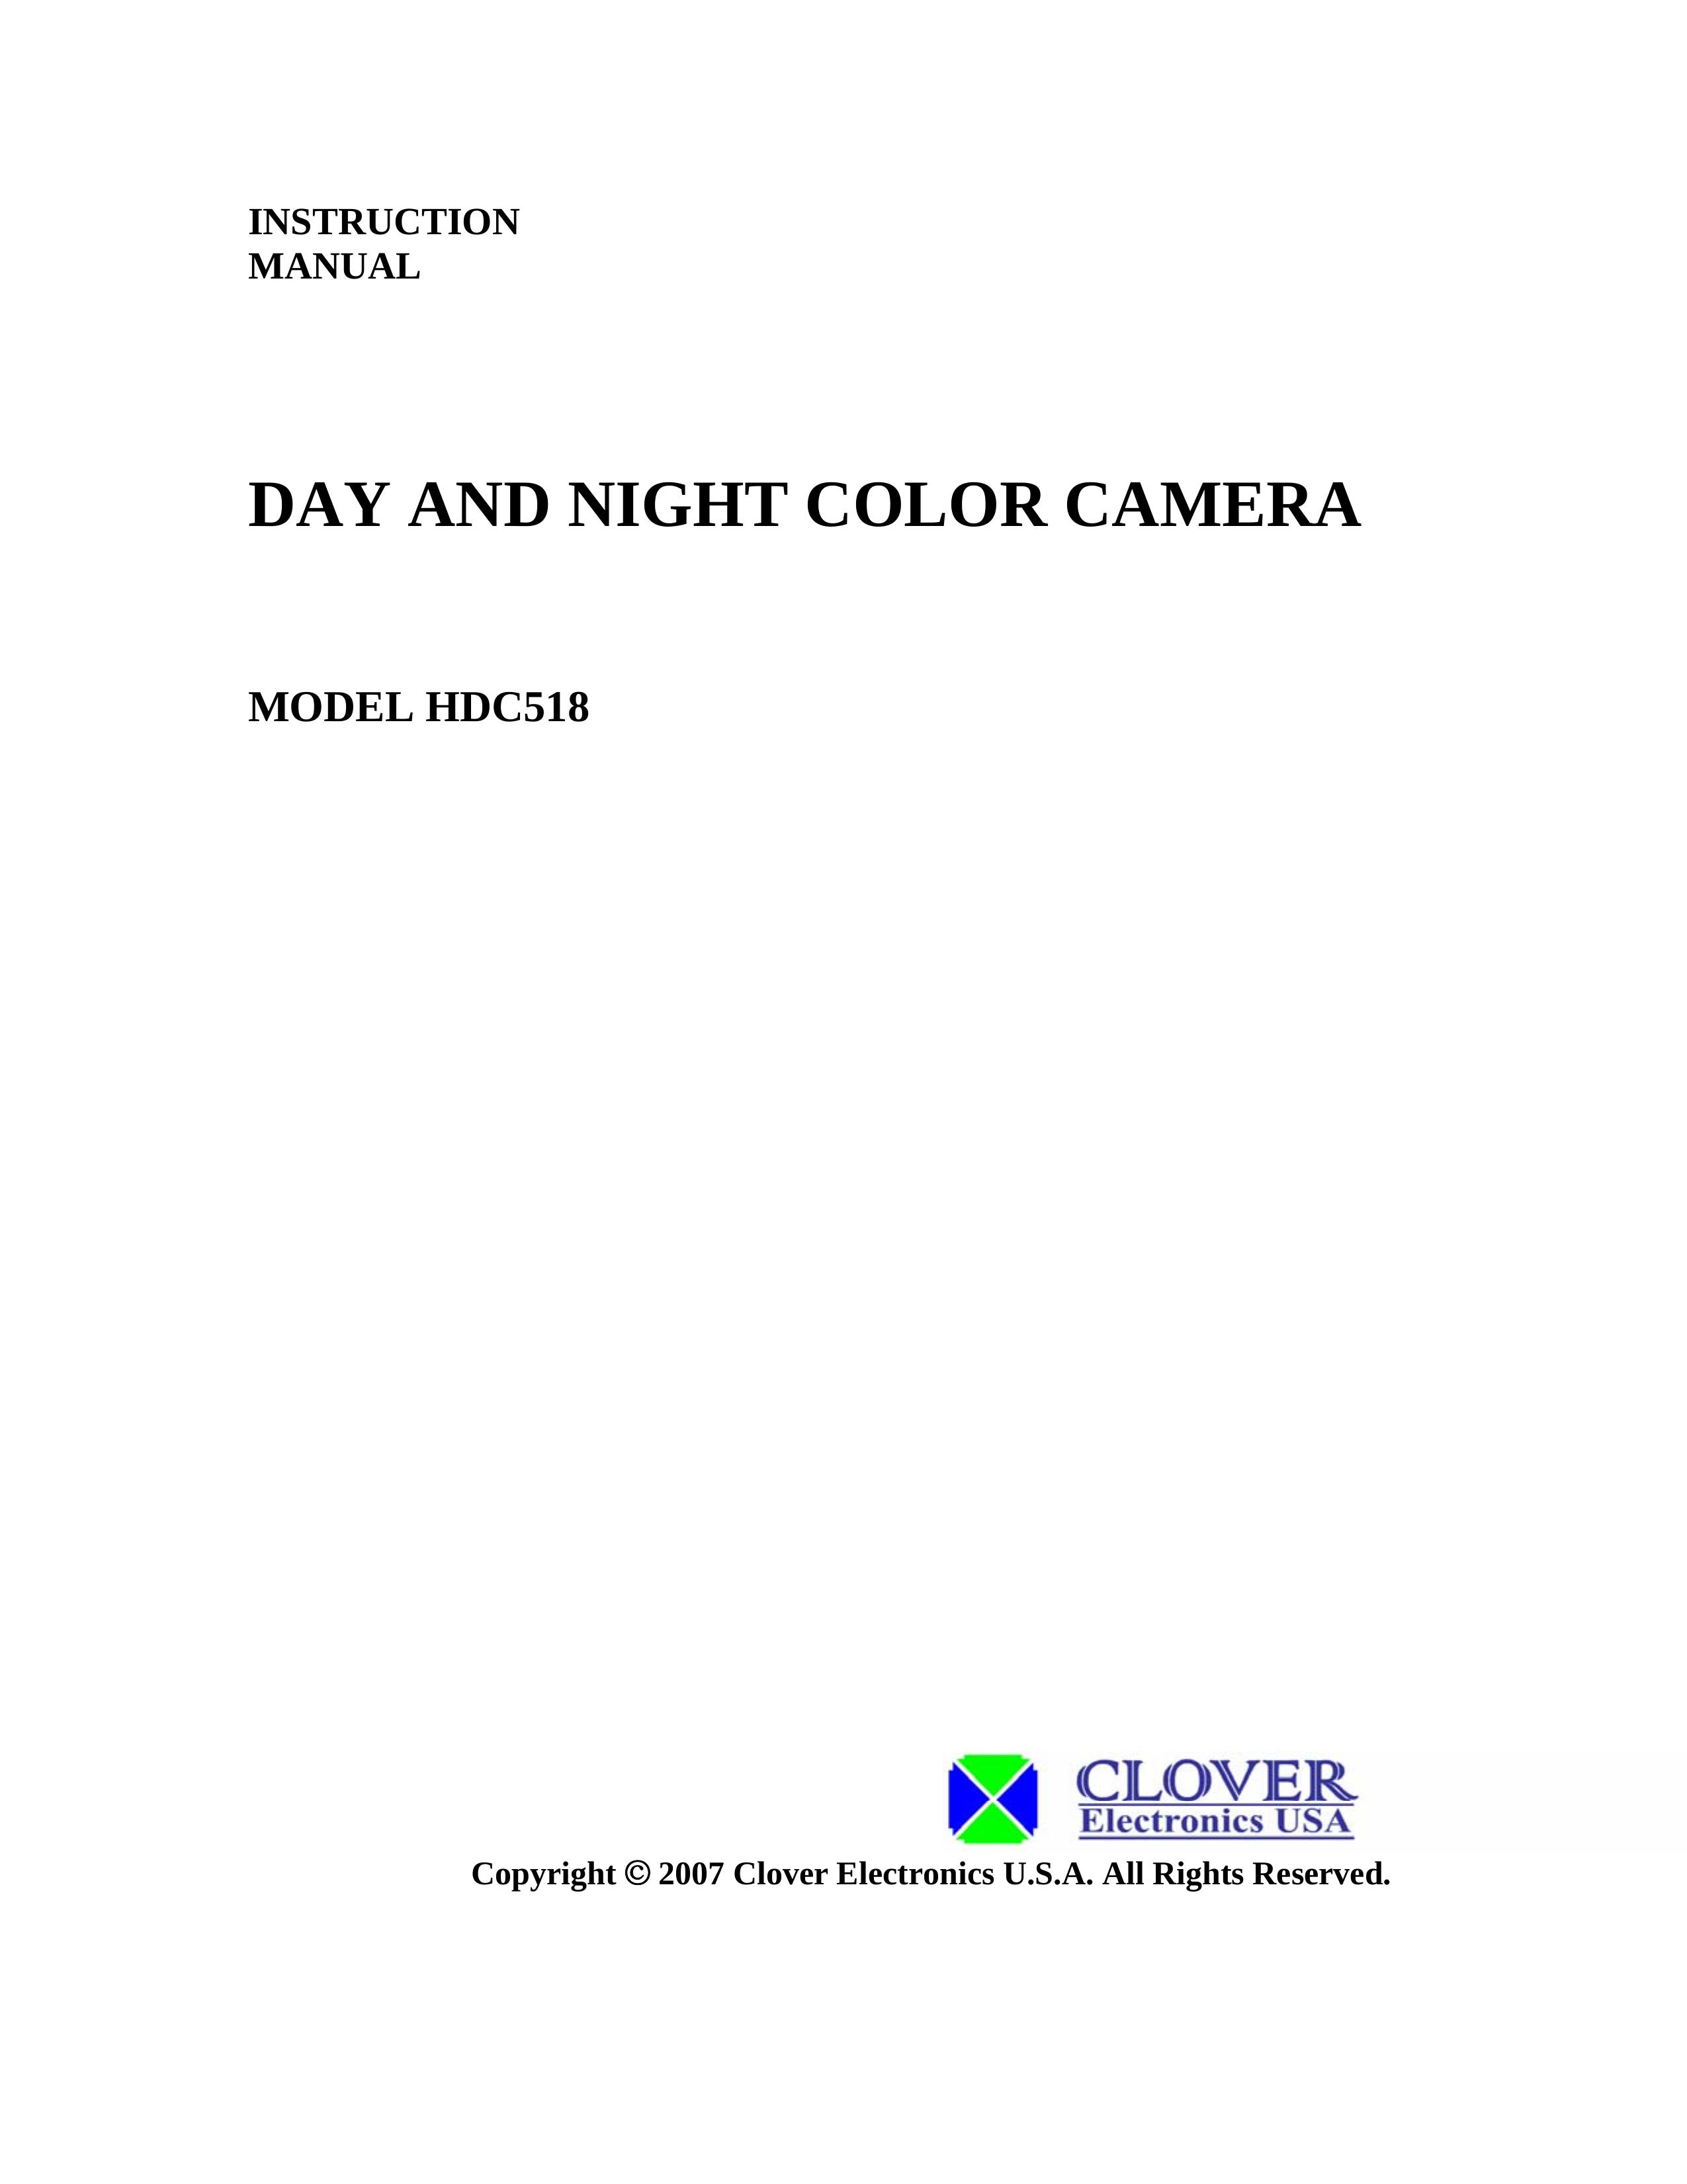 Clover Electronics HDC518 Security Camera User Manual